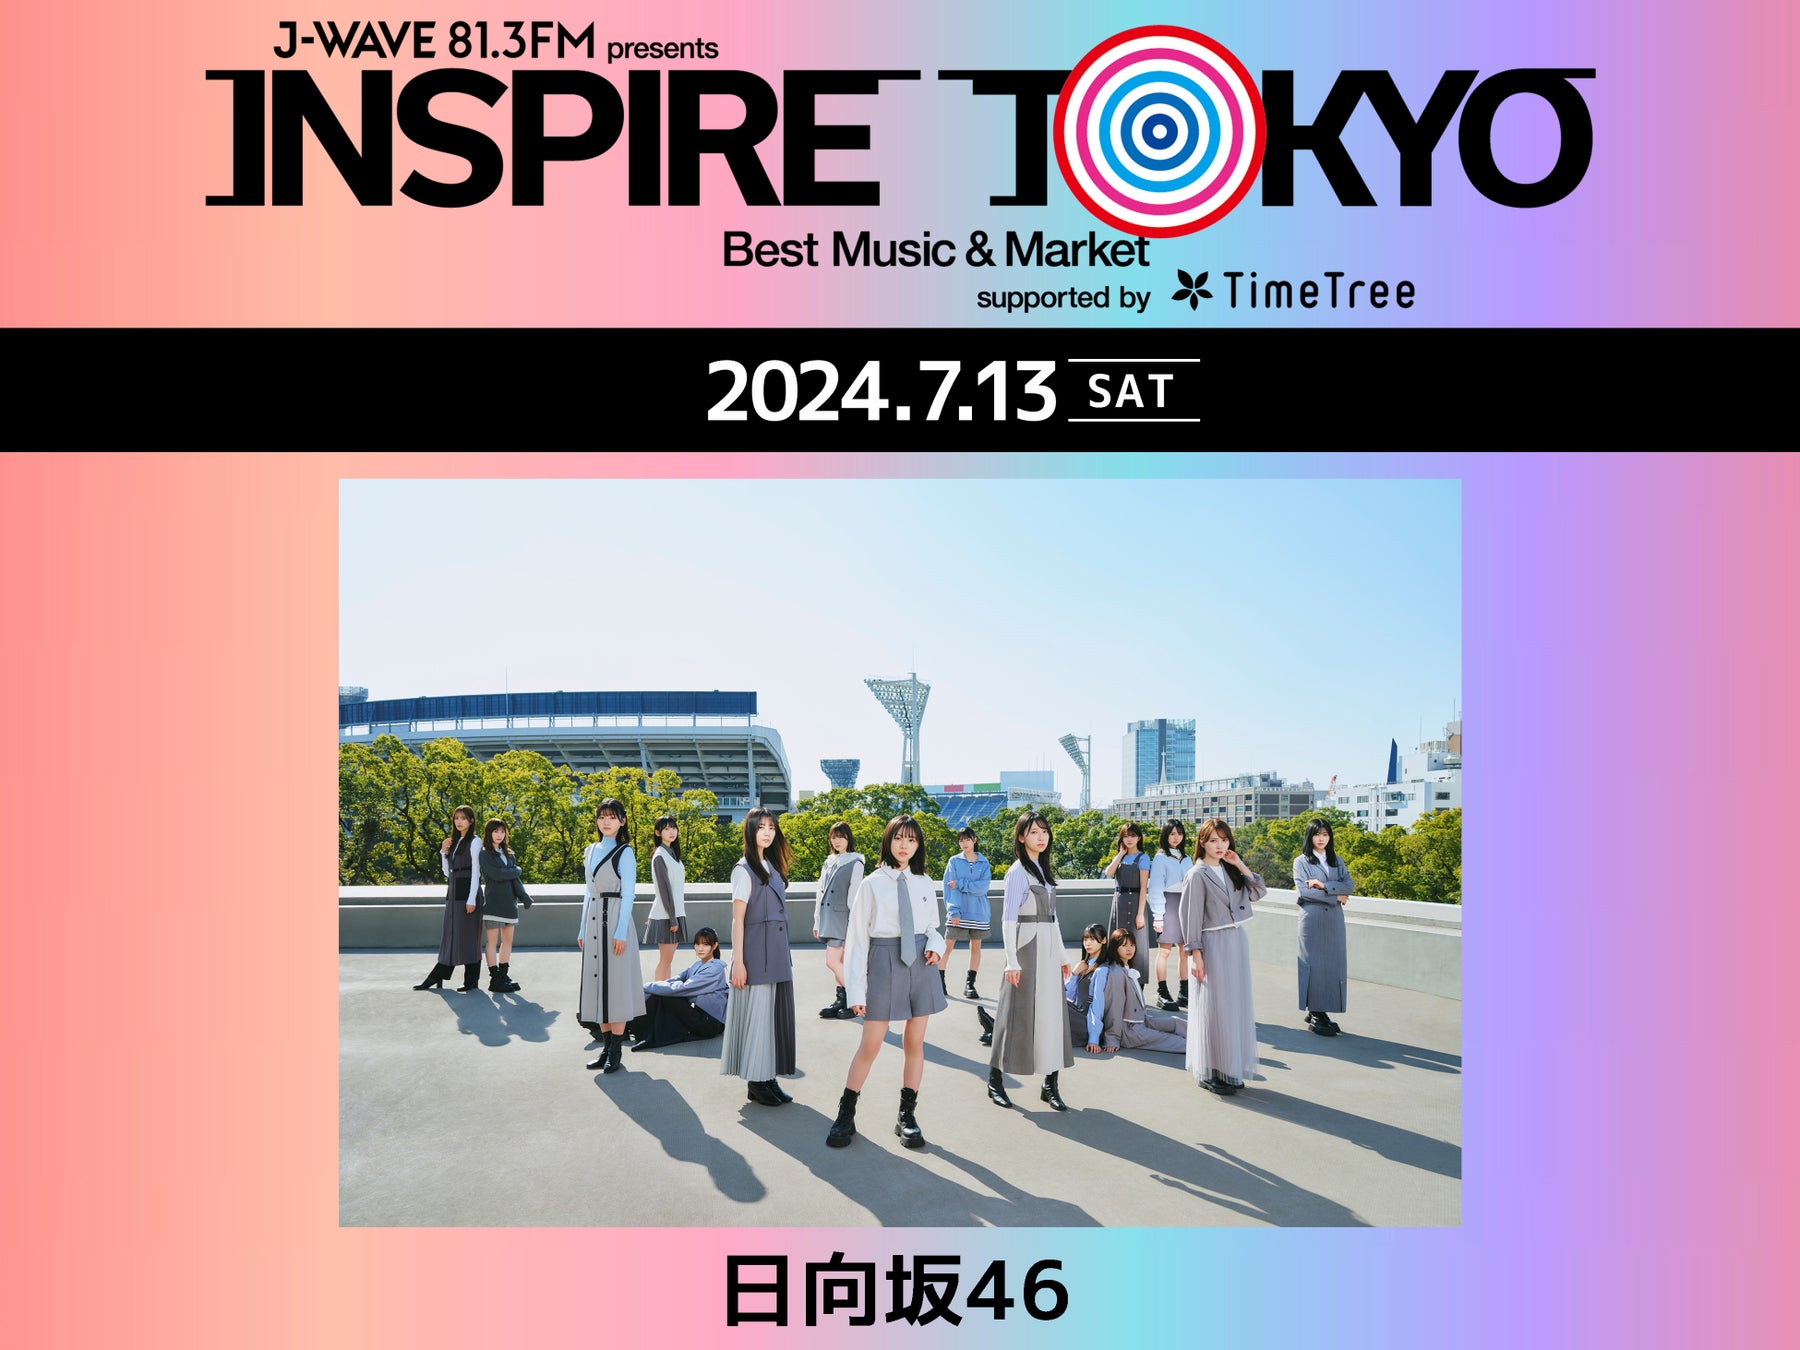 日向坂46が都市フェス「INSPIRE TOKYO 2024」初日7/13に急遽出演決定！ 7/13(土)、14(日)、15(月・祝)、代々木第一体育館・代々木公園イベント広場・ケヤキ並木で開催